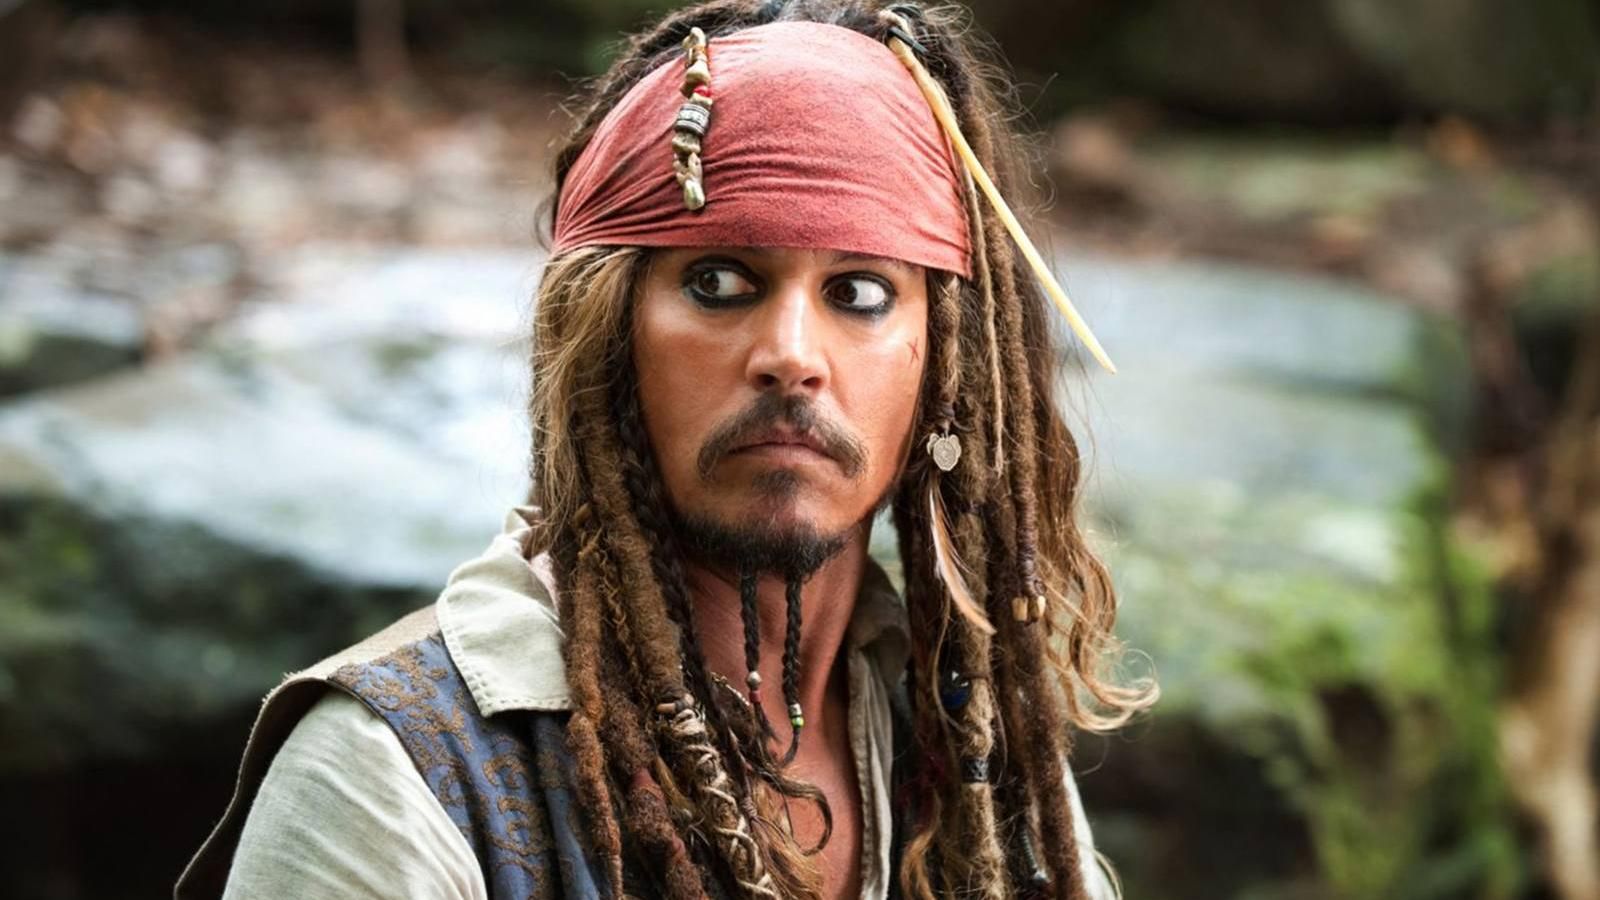 Джонни Депп неожиданно появился в Диснейленде в костюме пирата: видео